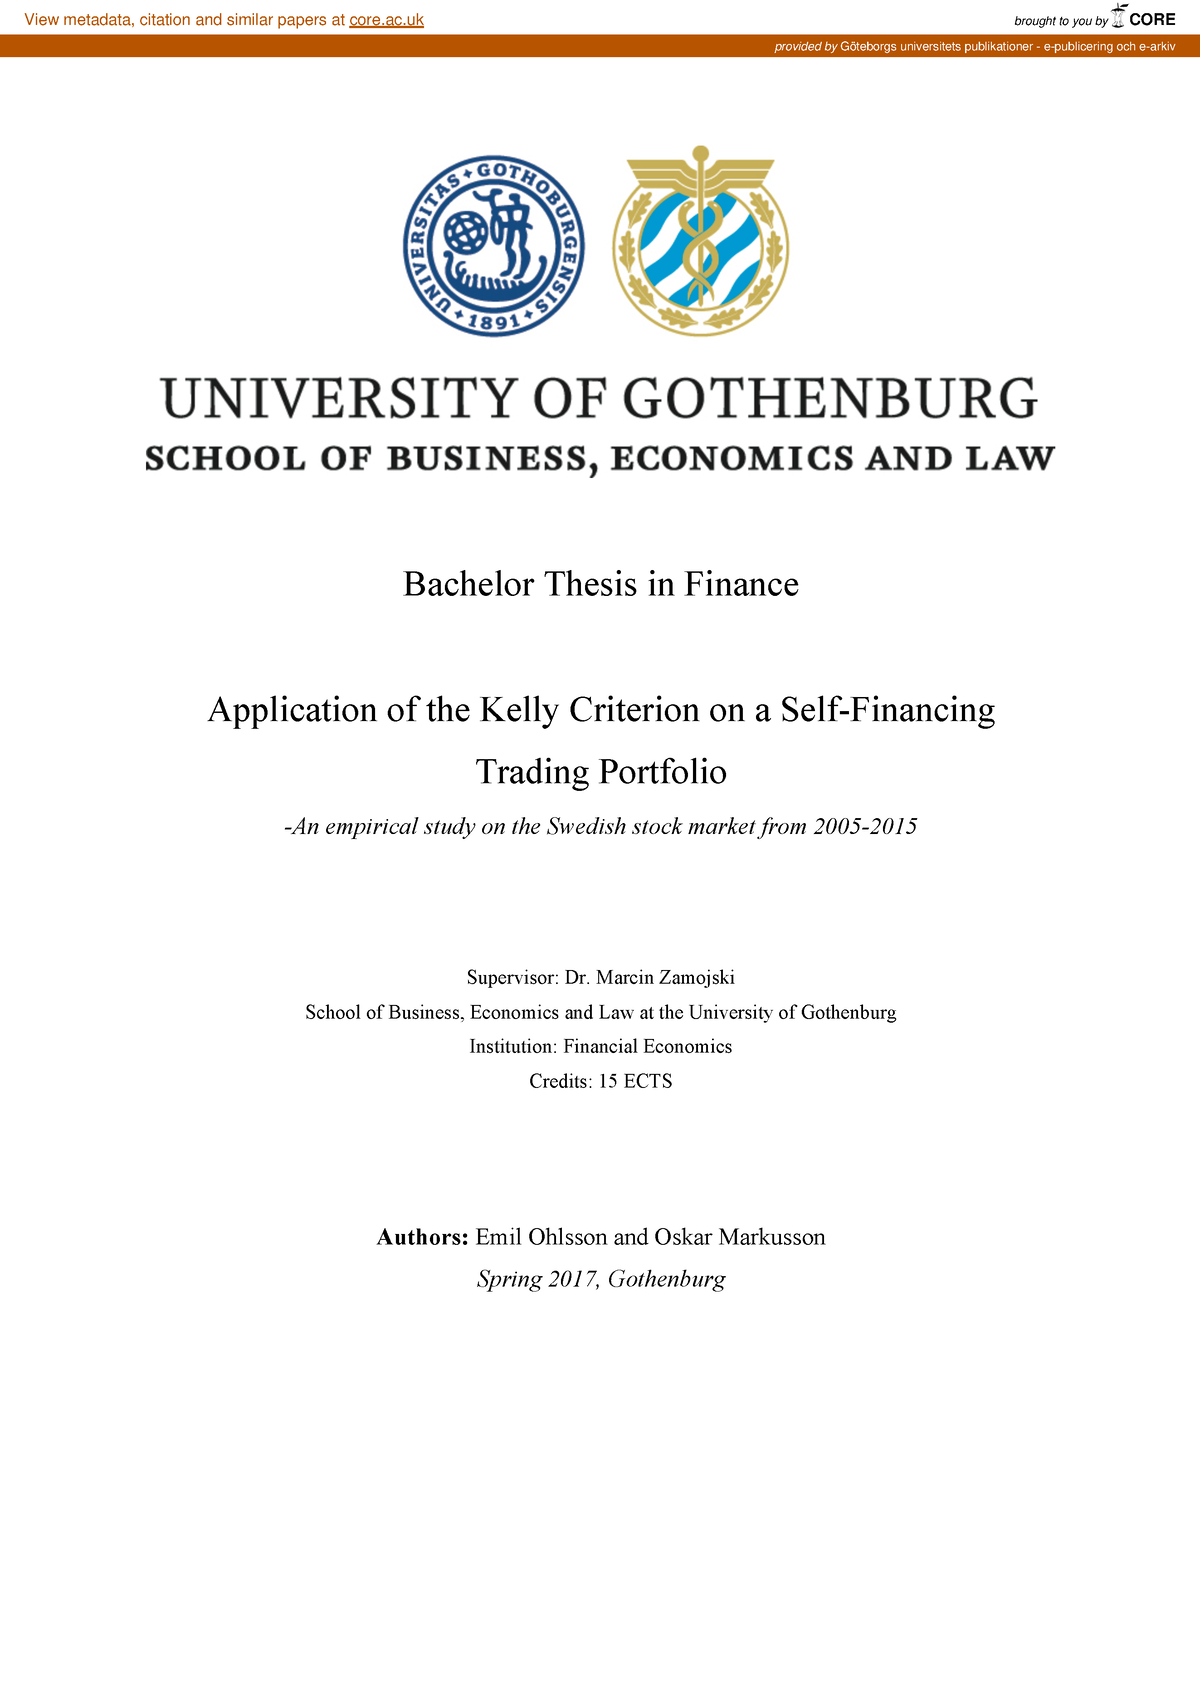 bachelor thesis finance